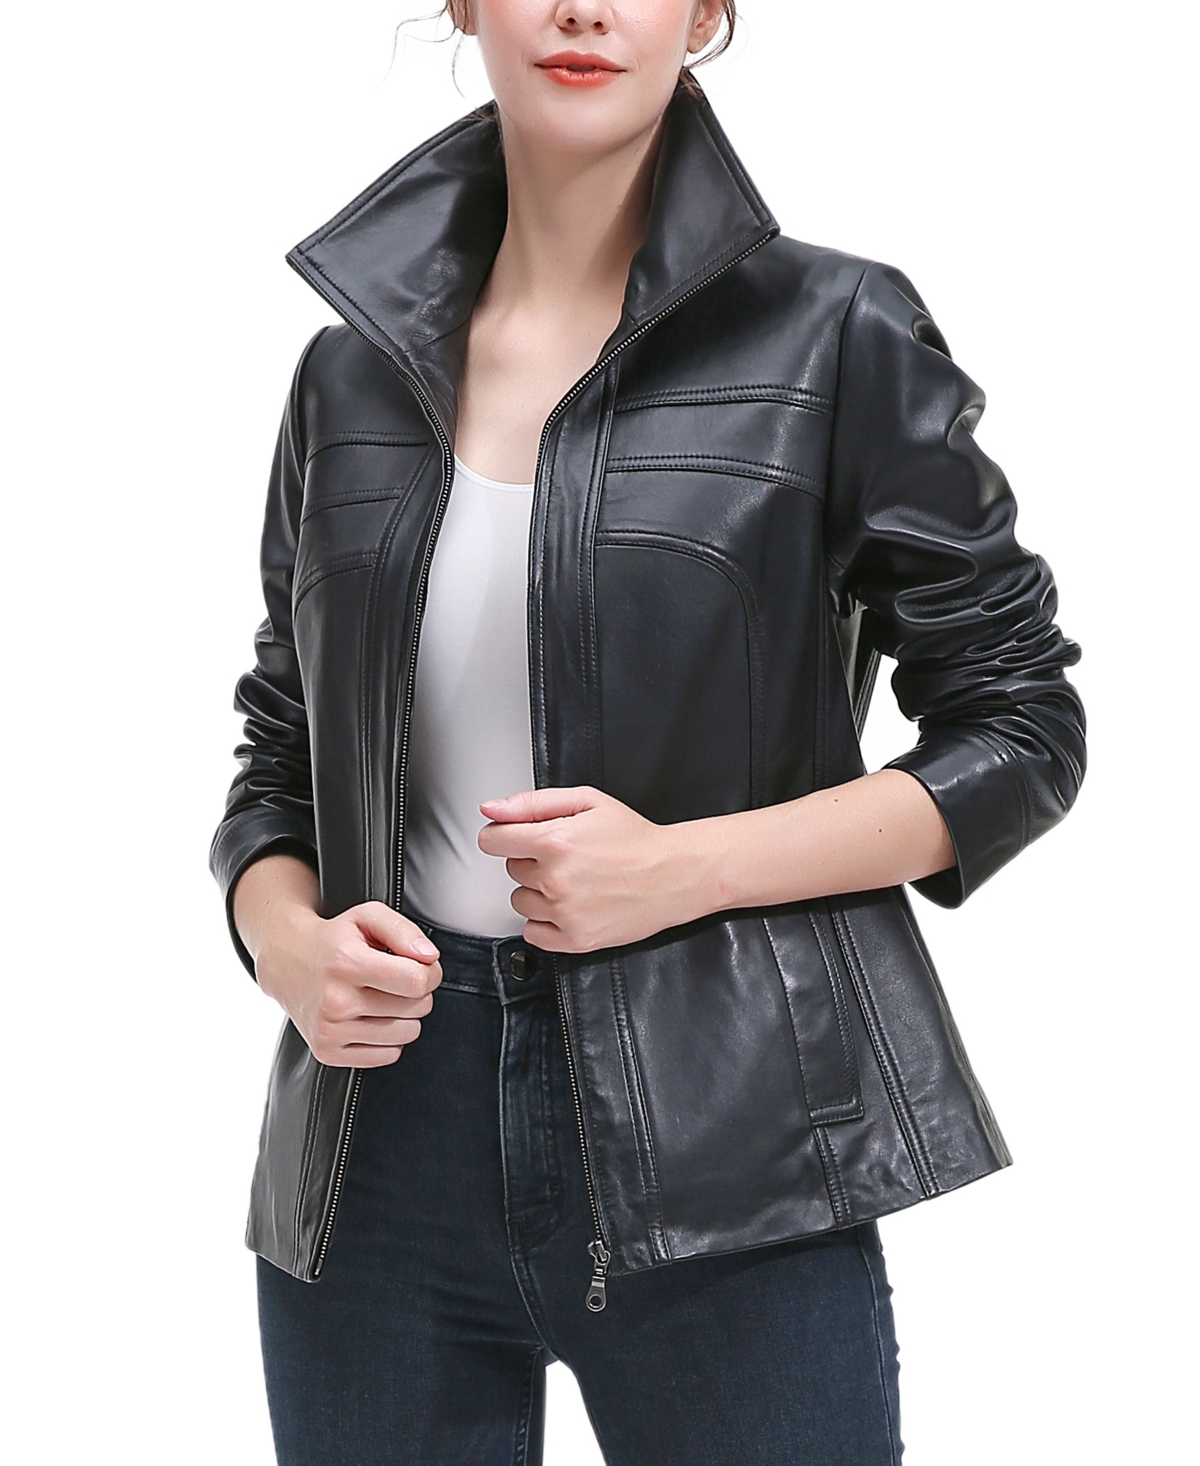 Plus Size Joyce Leather Jacket - Black